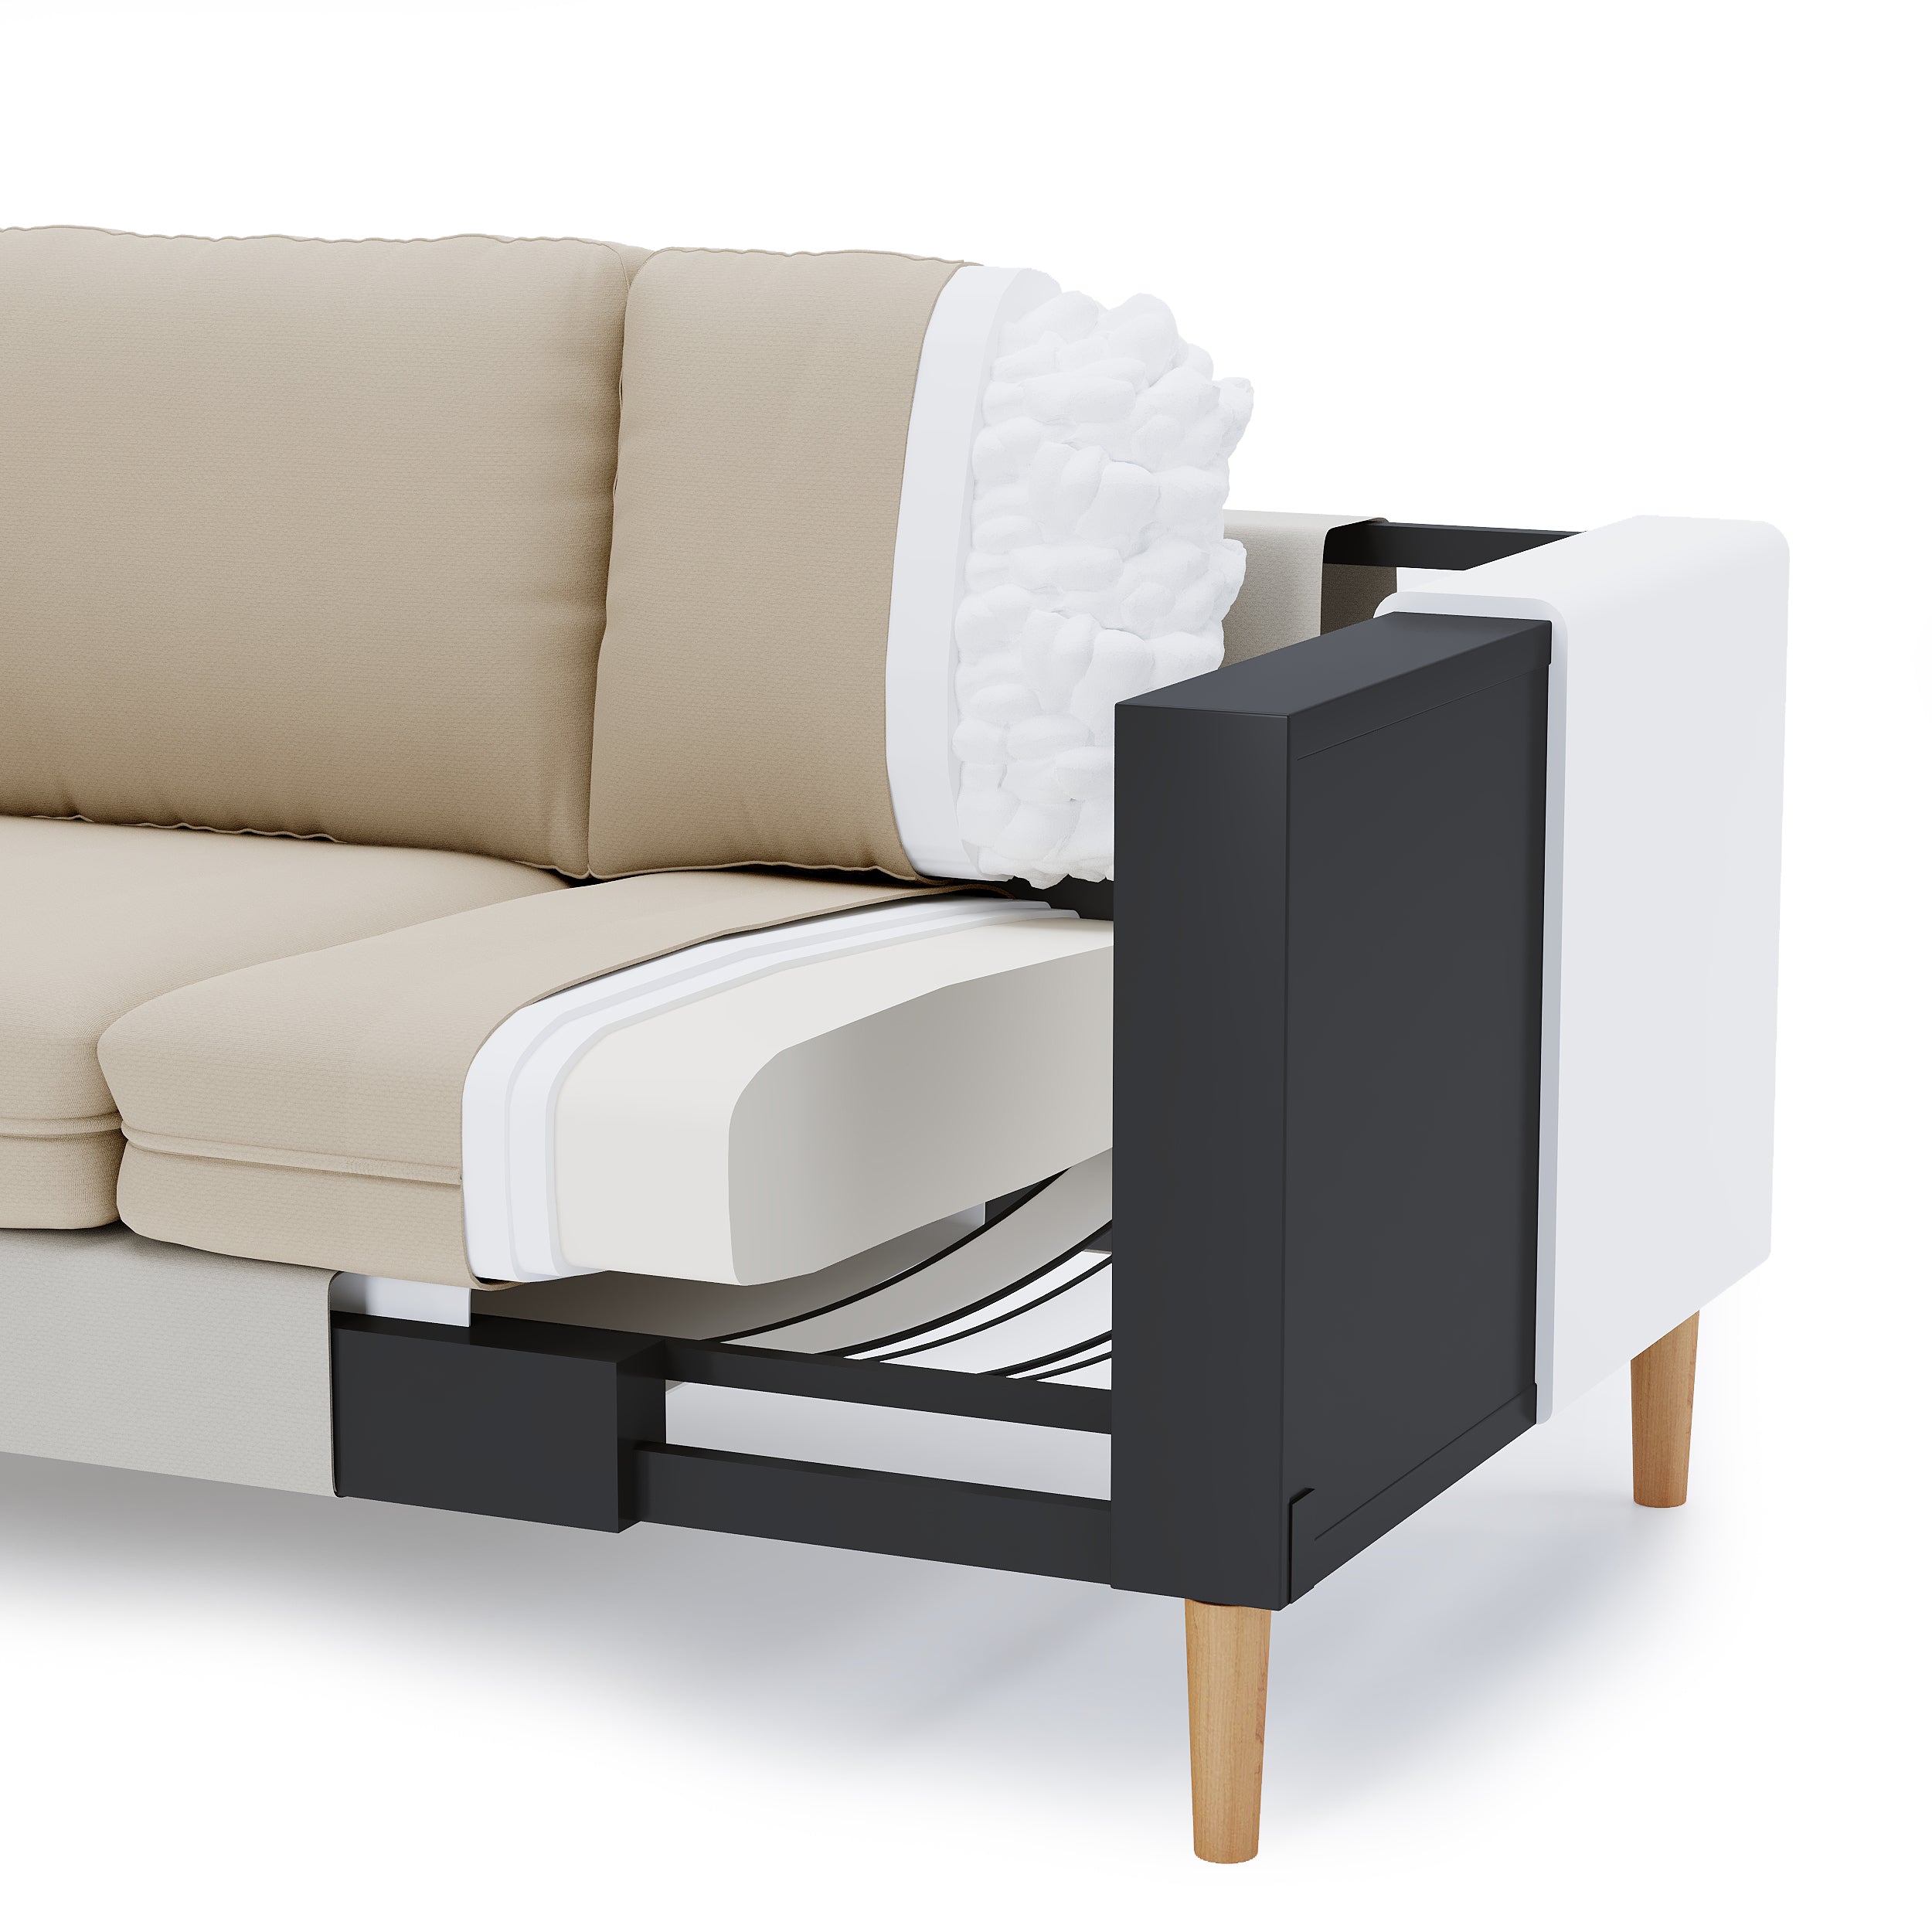 Why Pelican's modular sofas makes sense in long term?